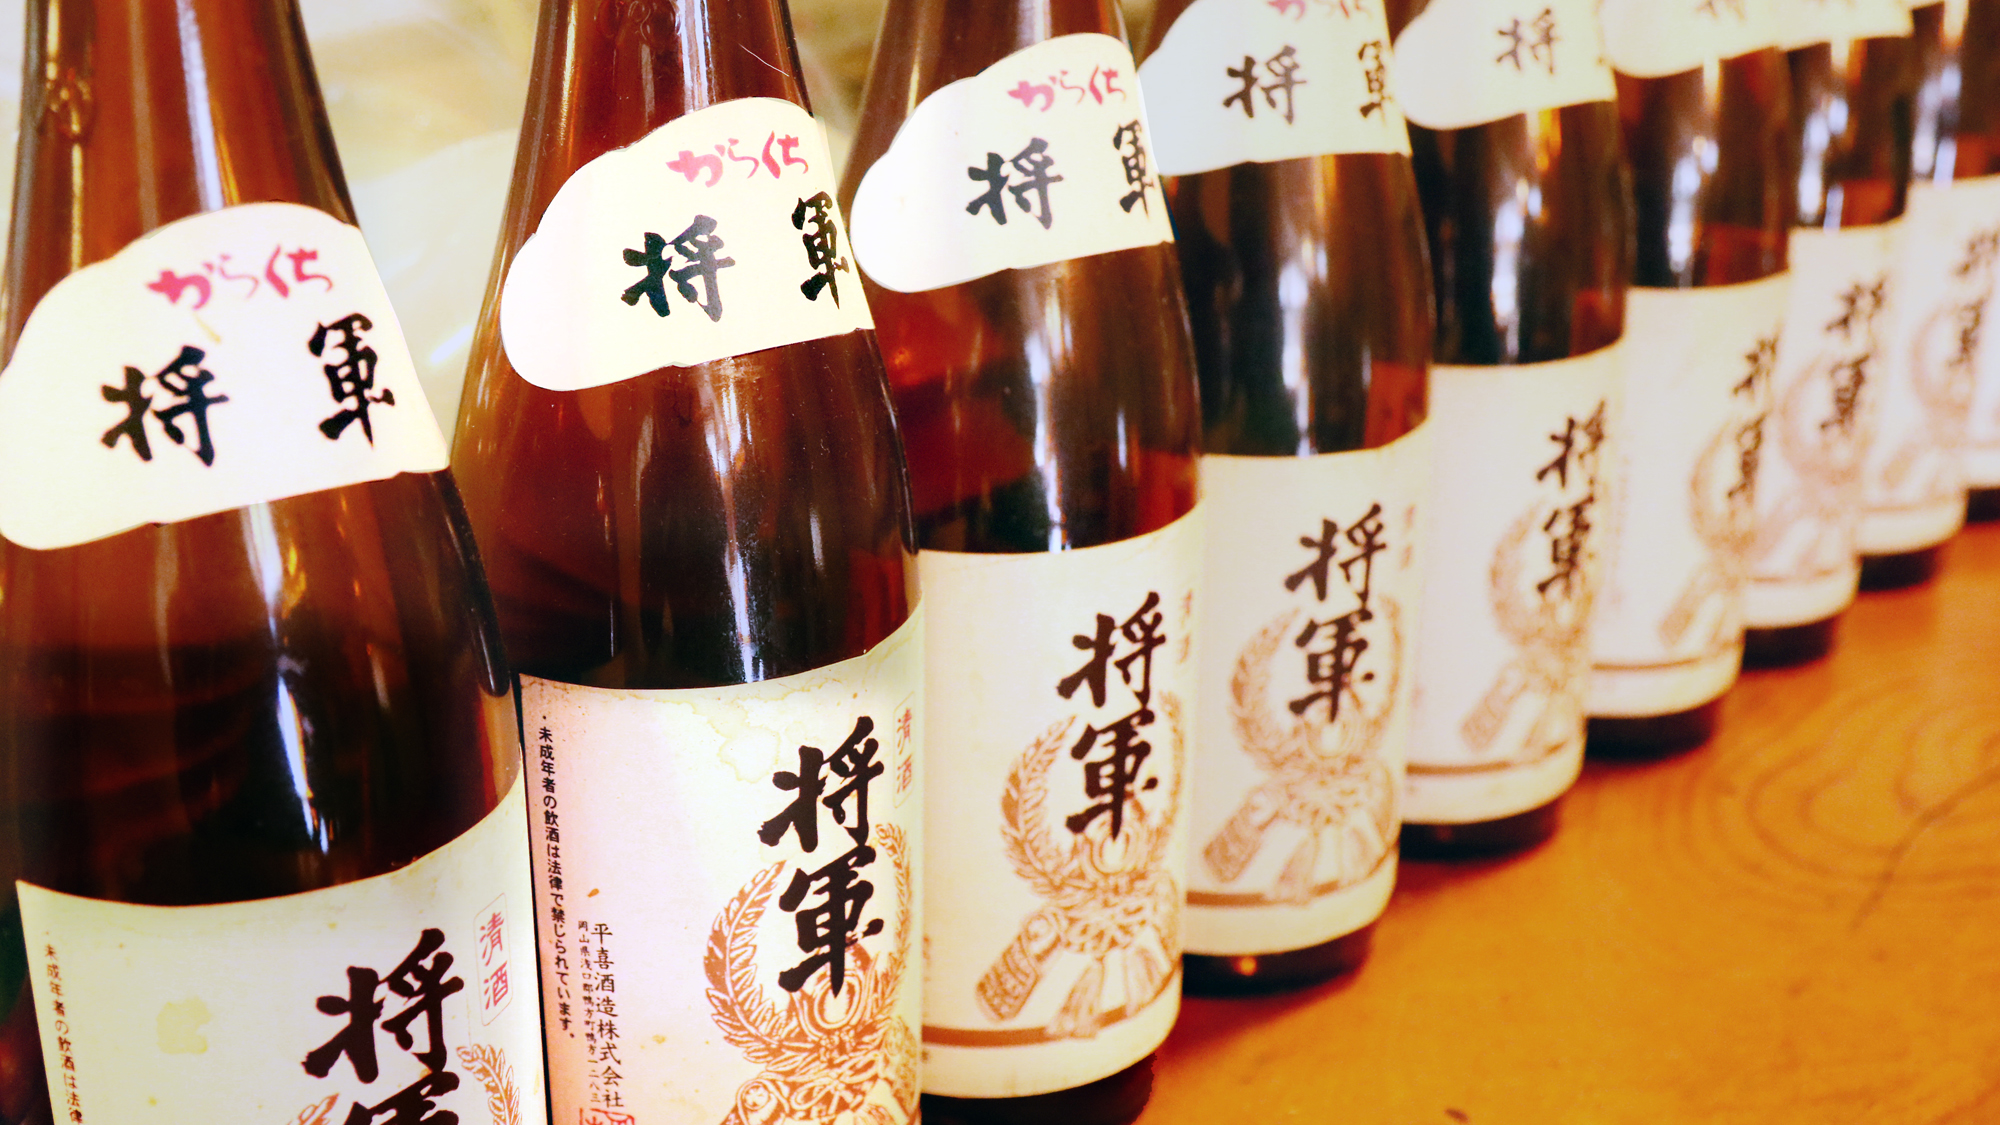 ◆日本酒も多く取り揃えています!